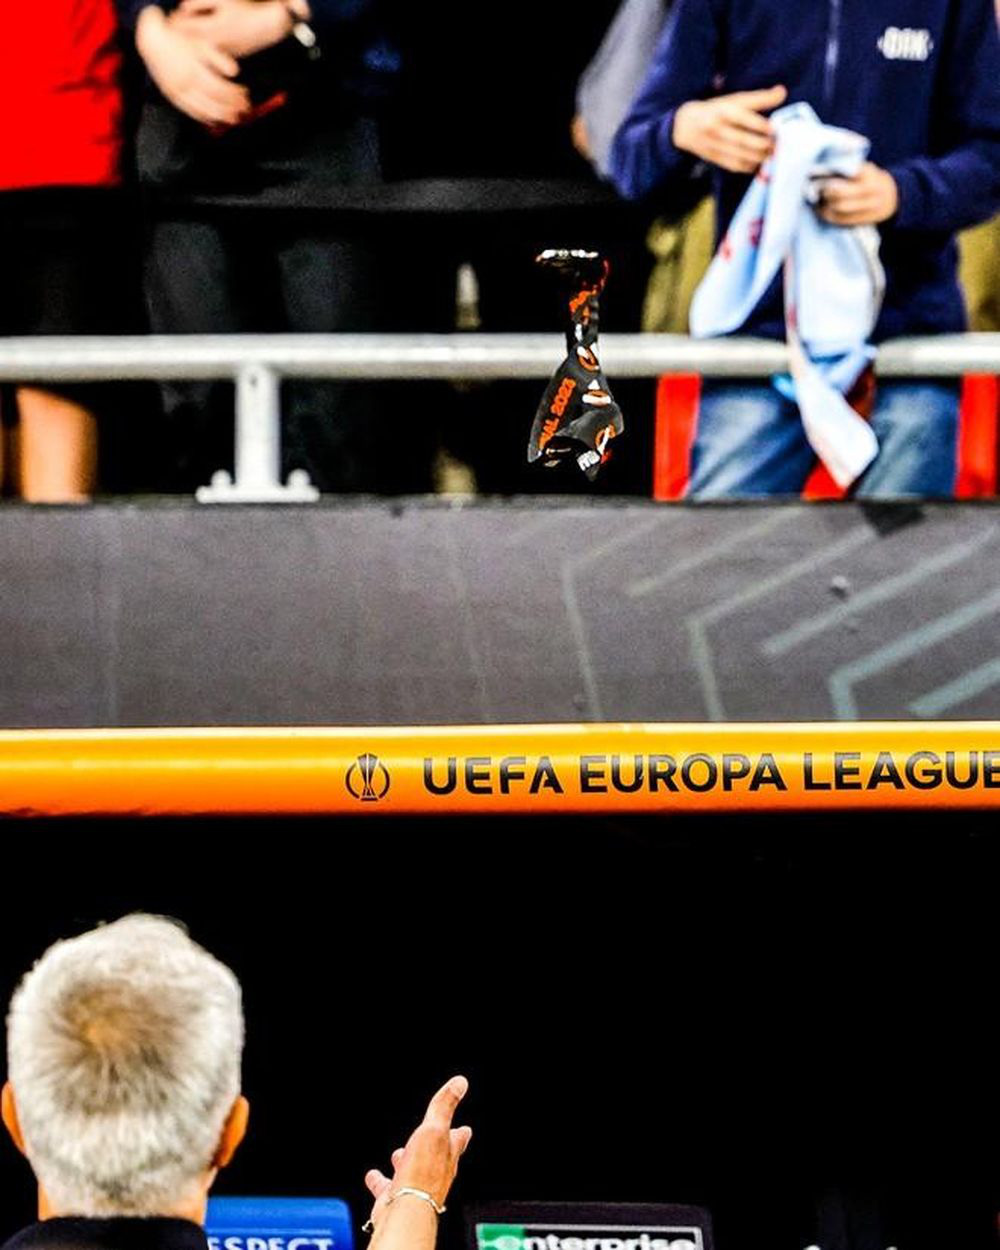 HLV Mourinho ném huy chương, lên tiếng chỉ trích trọng tài